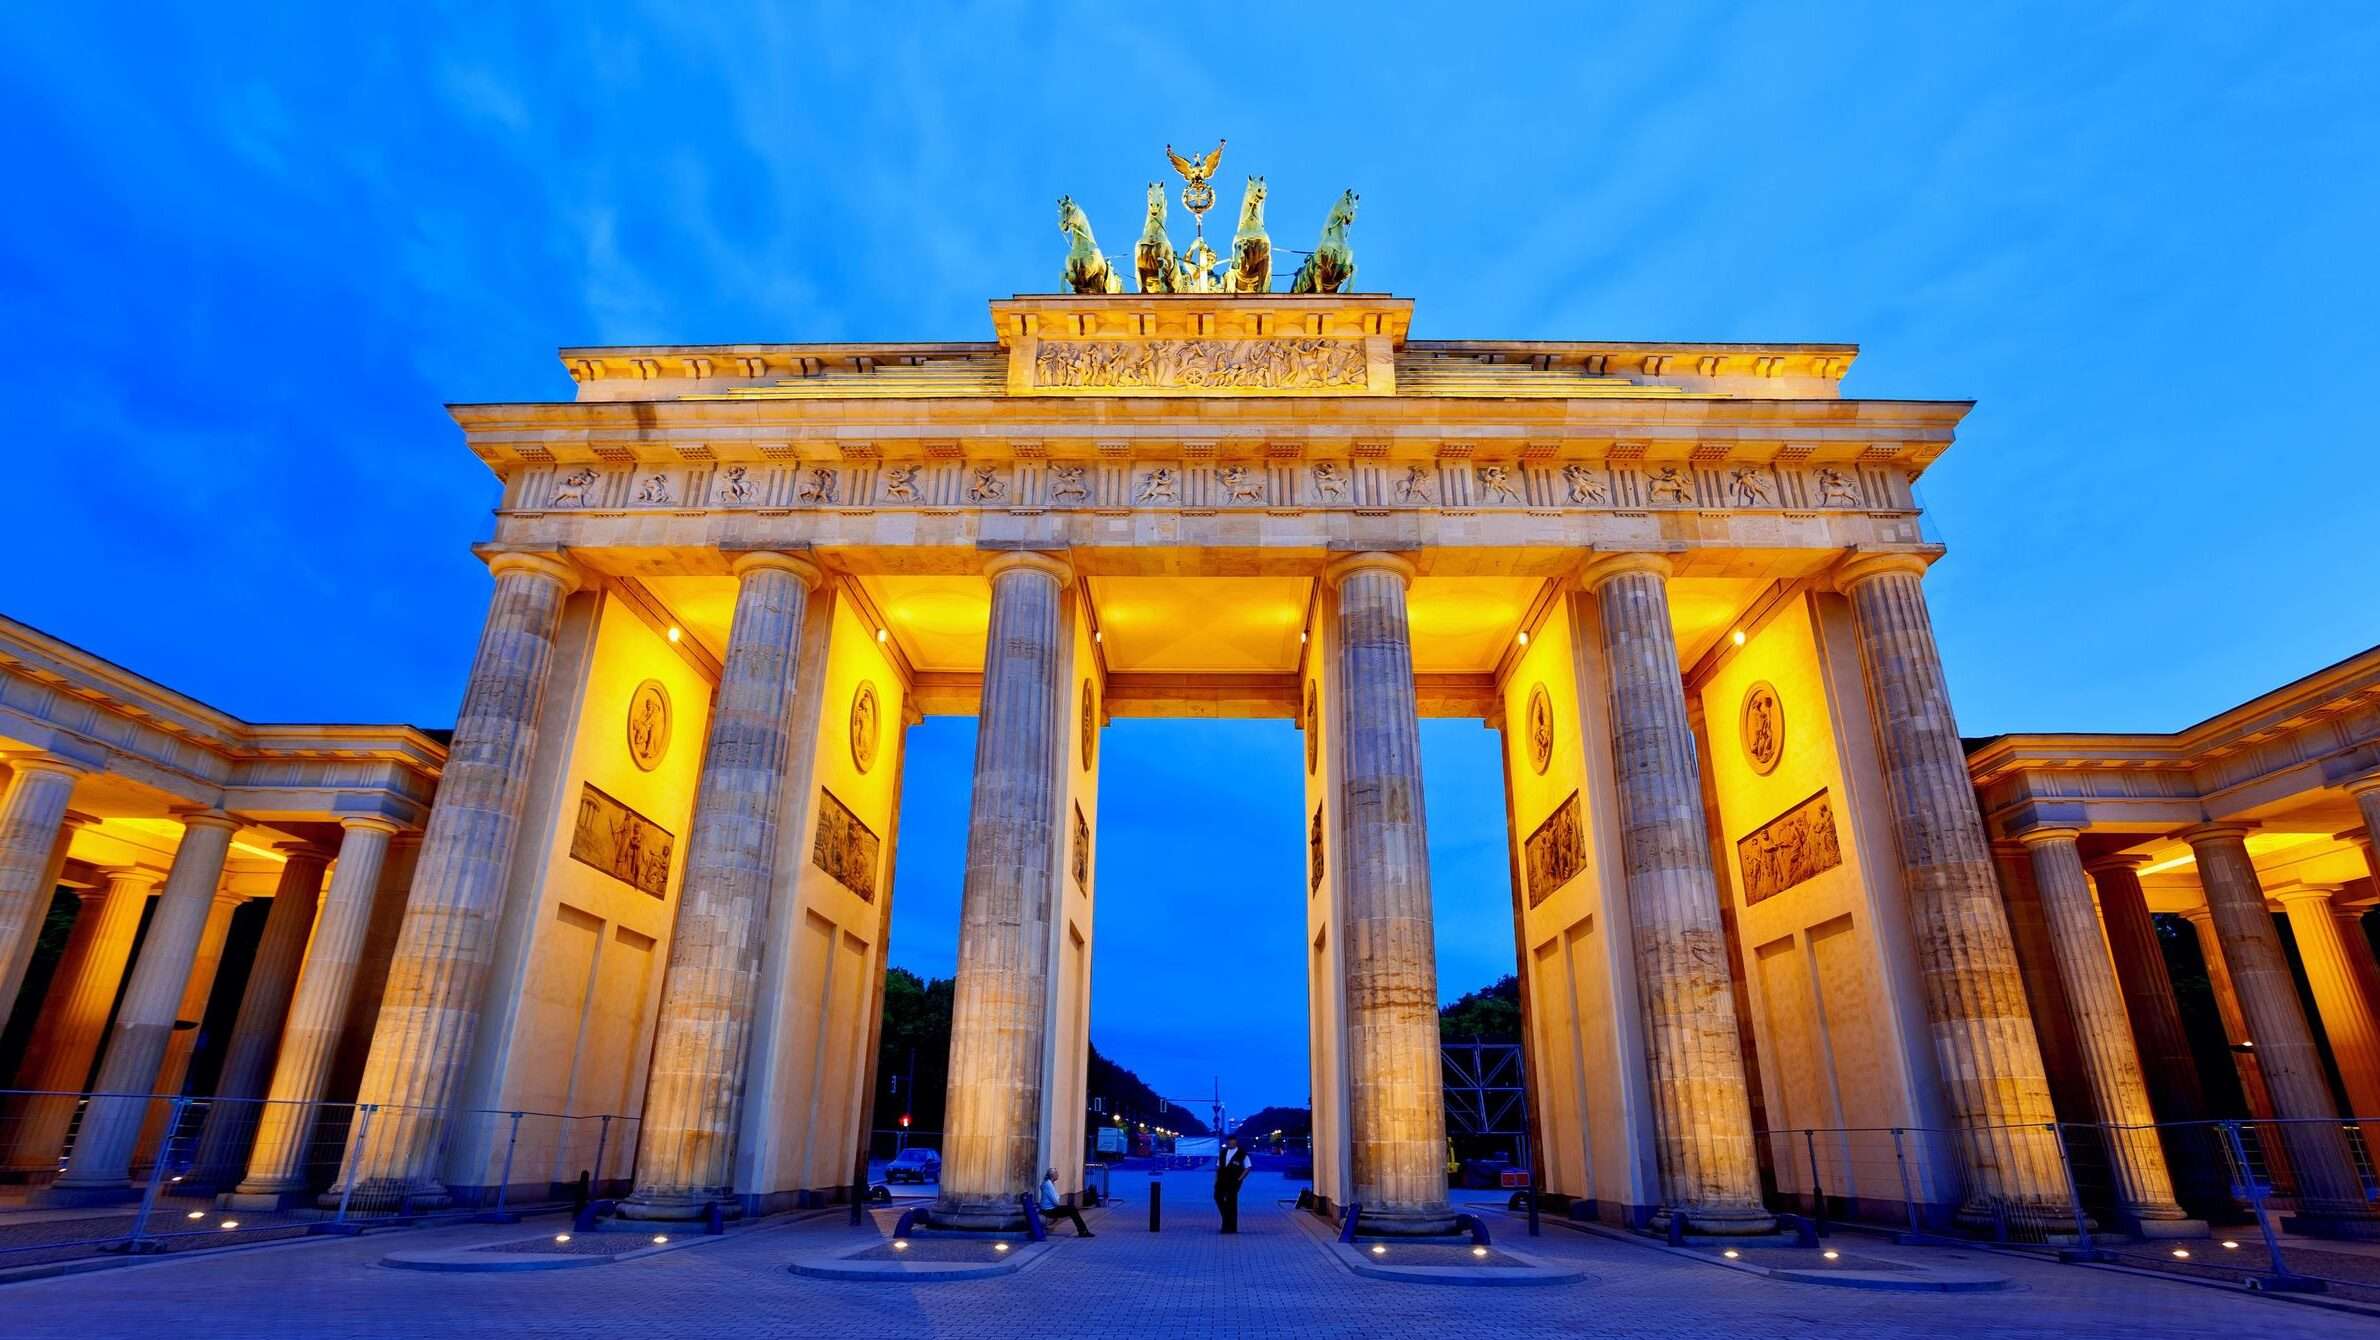 Germany's Brandenburg Gate